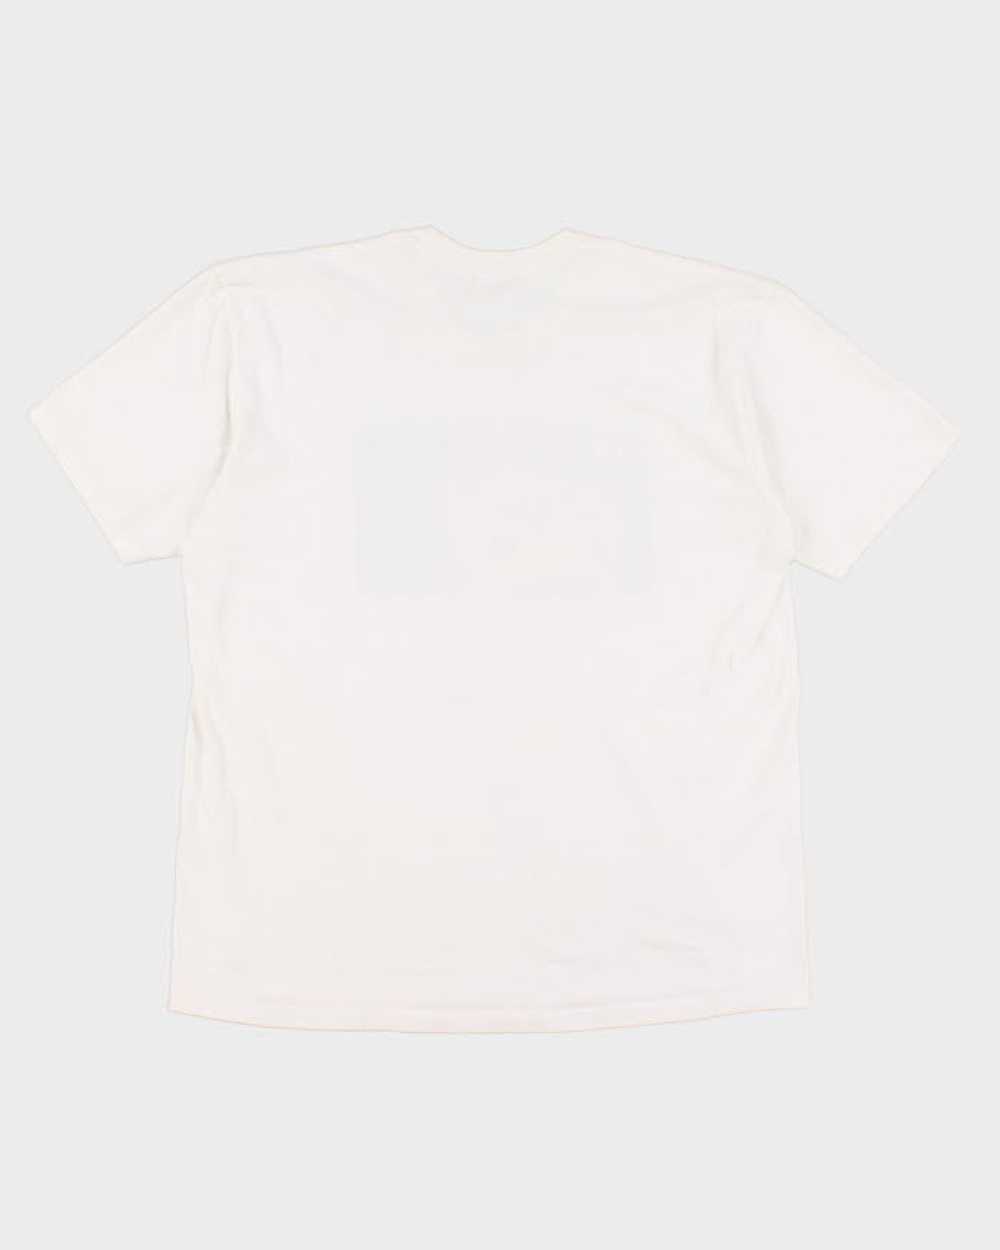 Supreme Bela Lugosi T-Shirt - XL - image 2